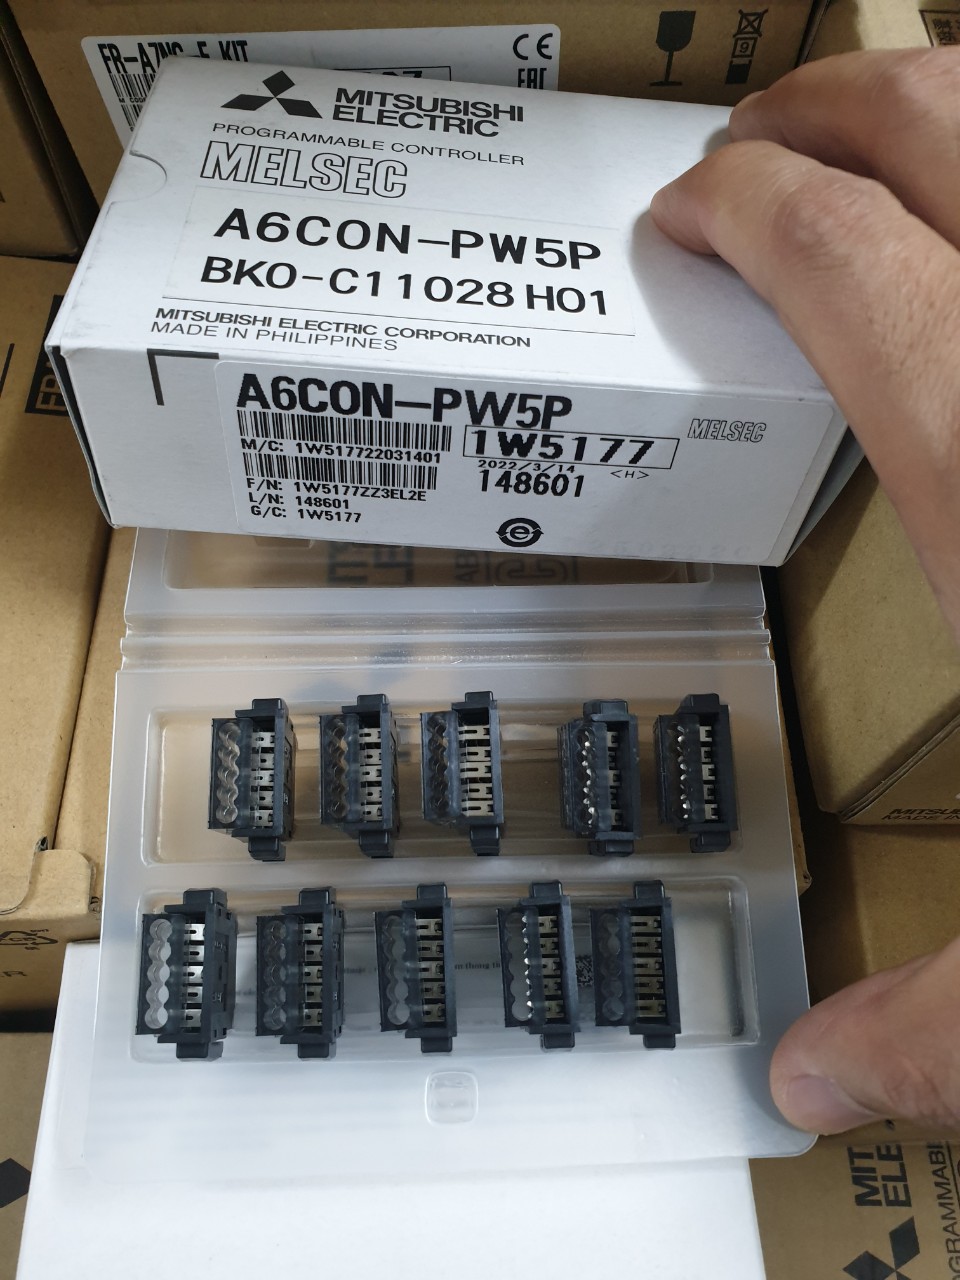 A6CON-PW5P